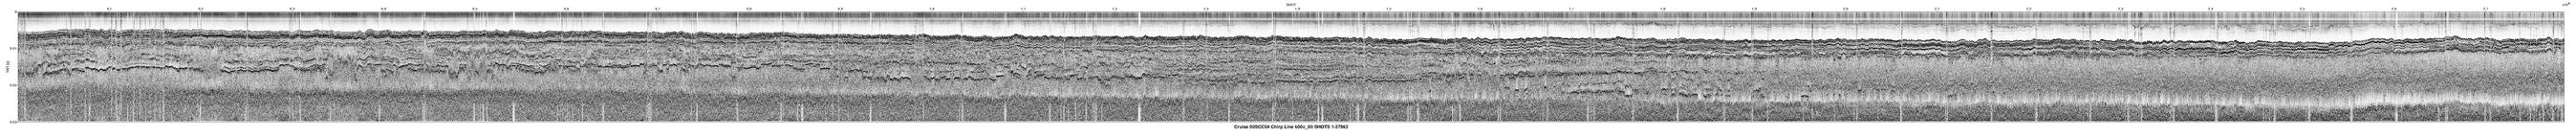 00SCC04 b00c_60 seismic profile image